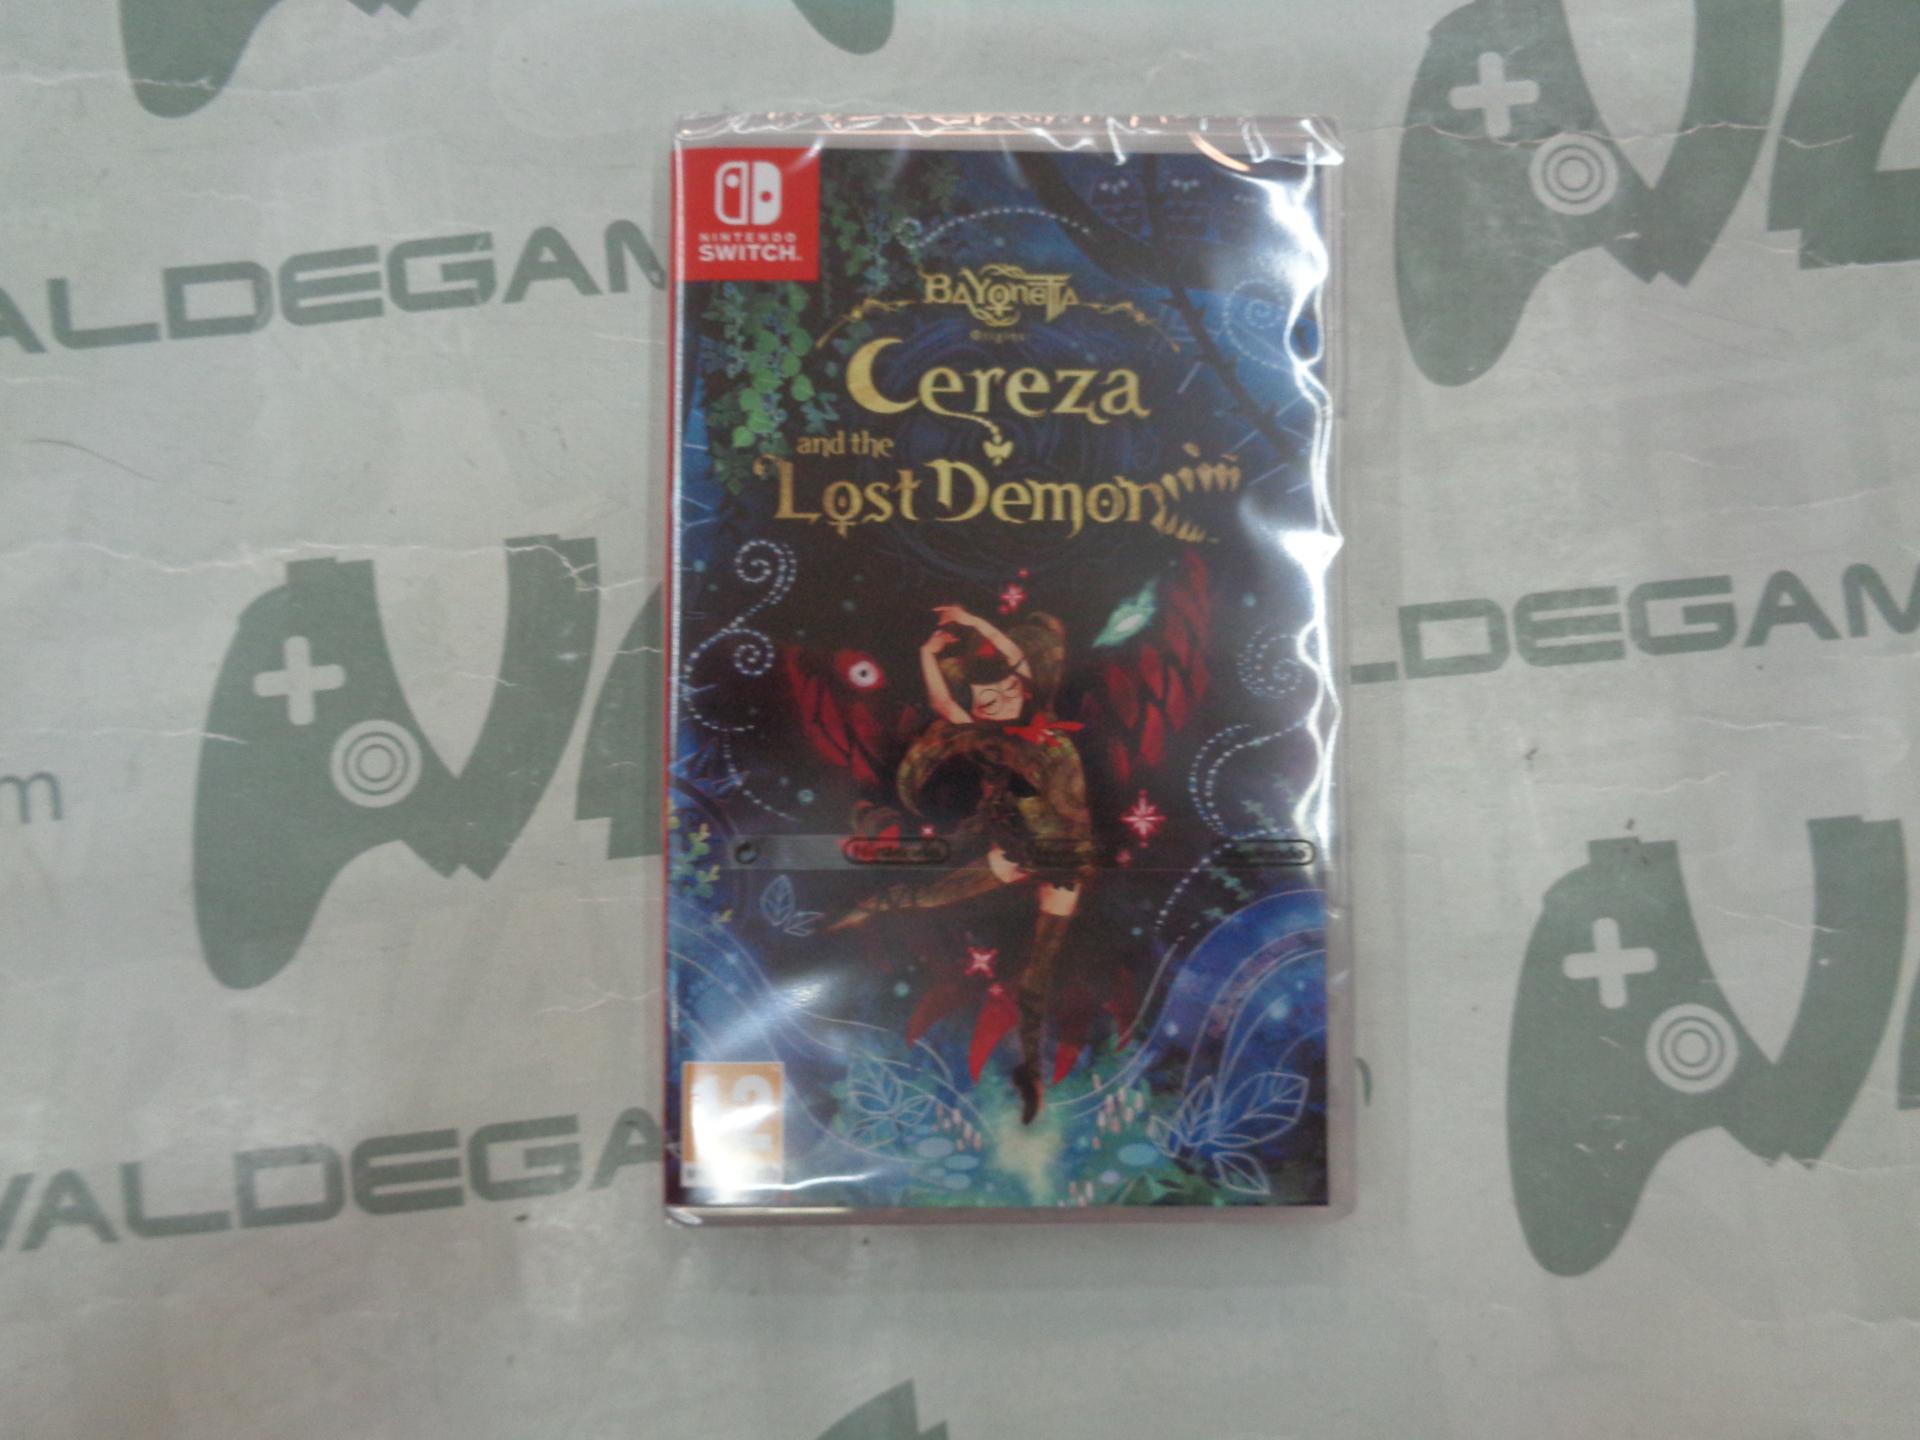 Bayonetta Origins : Cereza and the Lost Demon